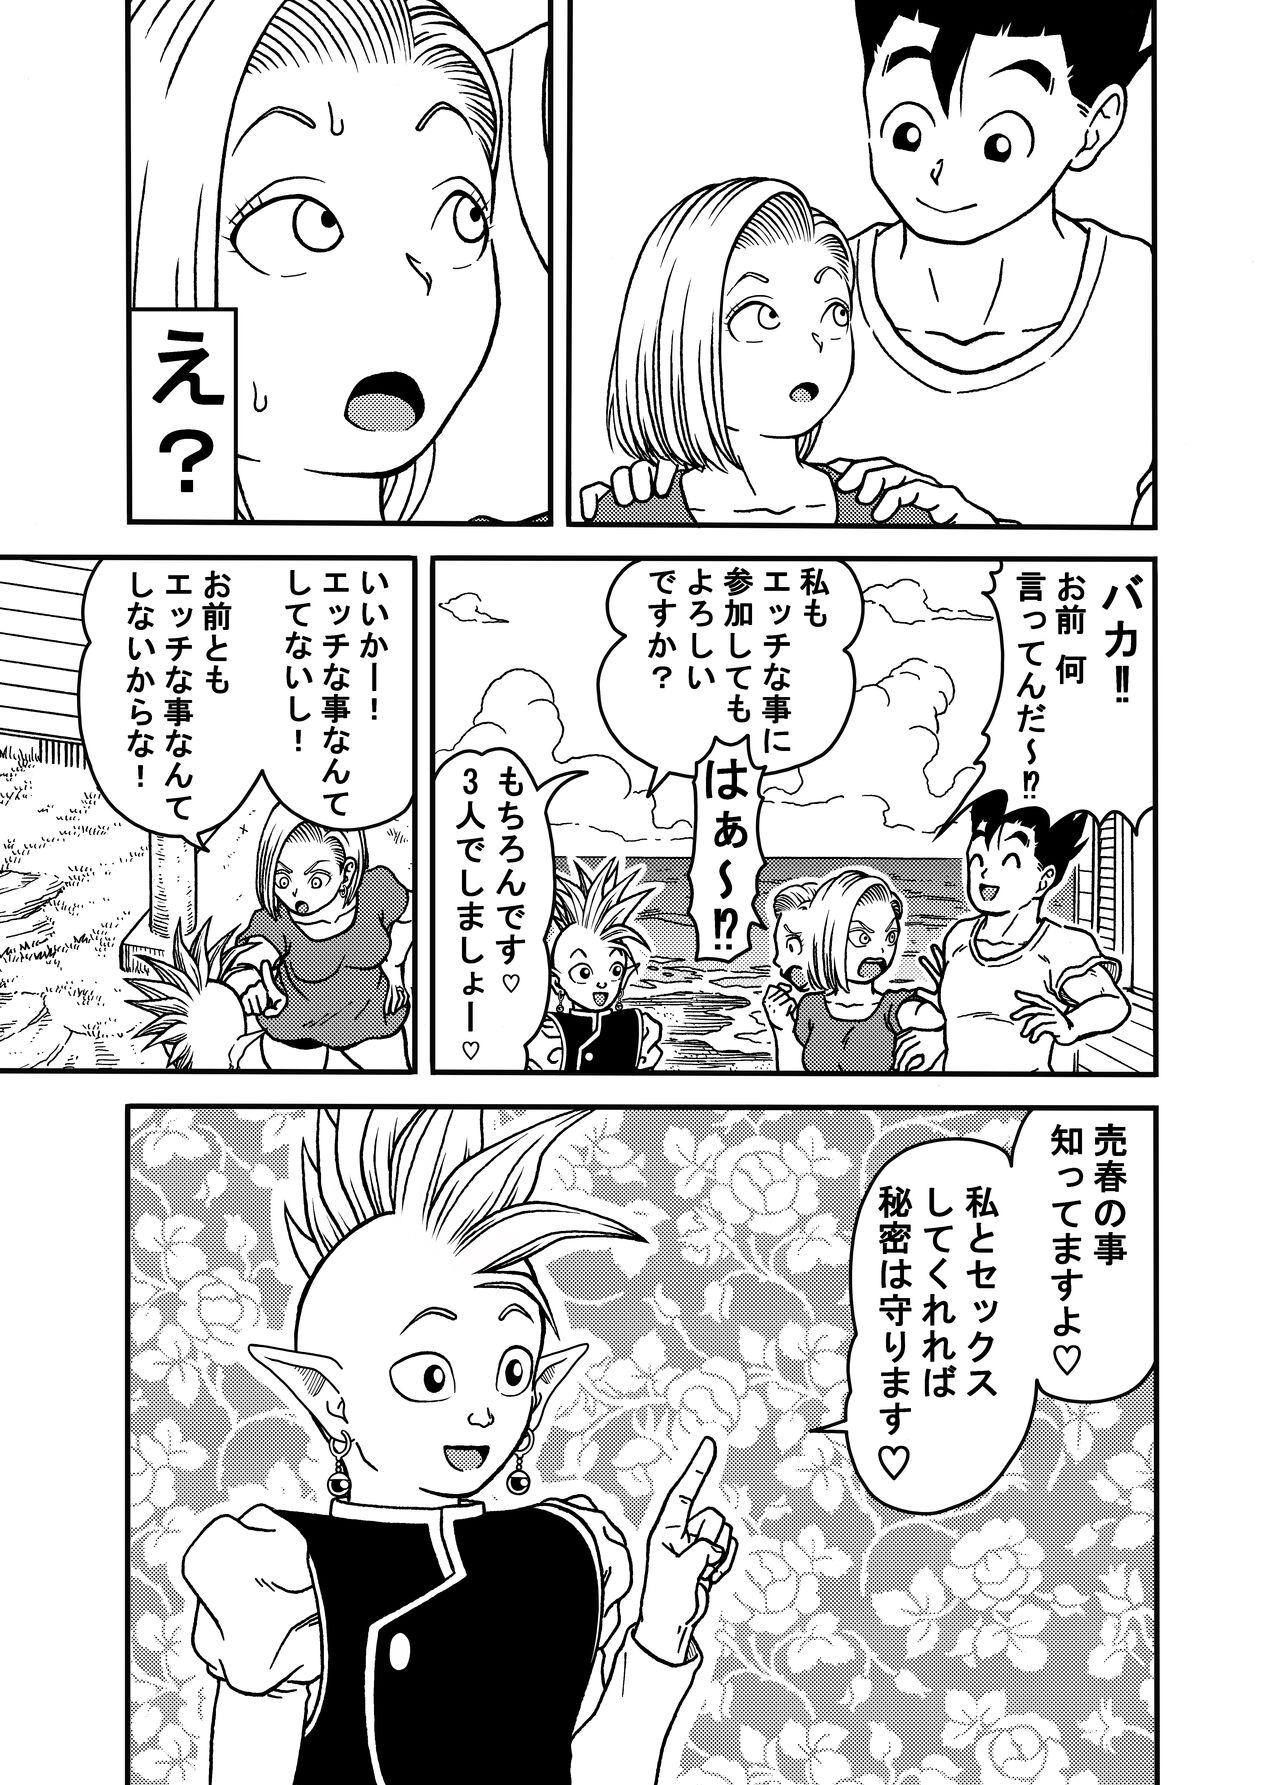 Chunky 18-gou NTR Nakadashi on Parade 5 - Dragon ball z Gay Medic - Page 9